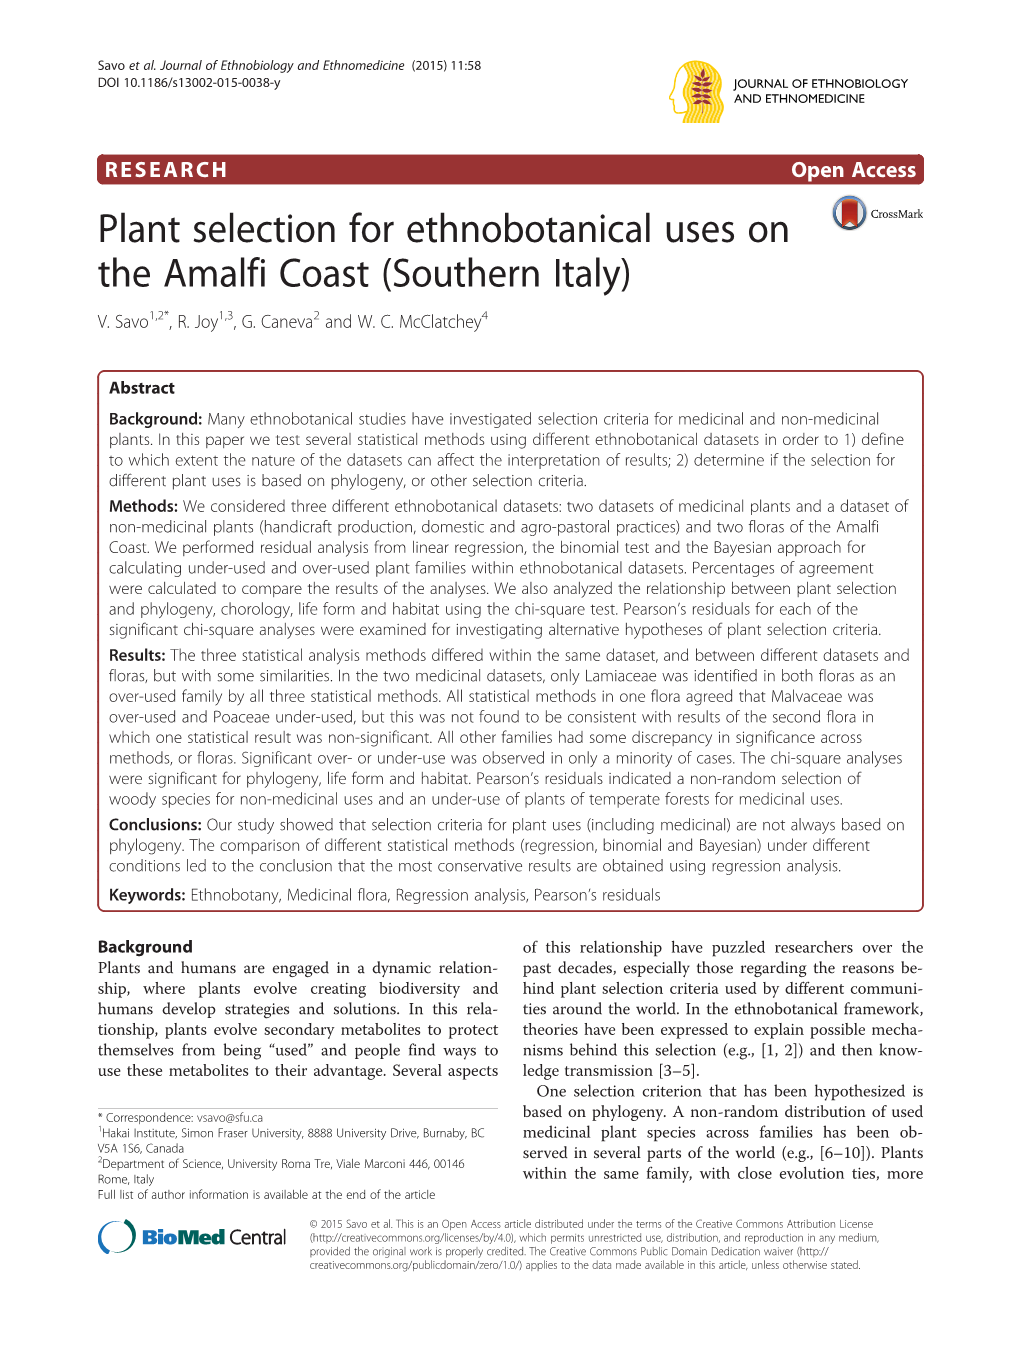 Plant Selection for Ethnobotanical Uses on the Amalfi Coast (Southern Italy) V